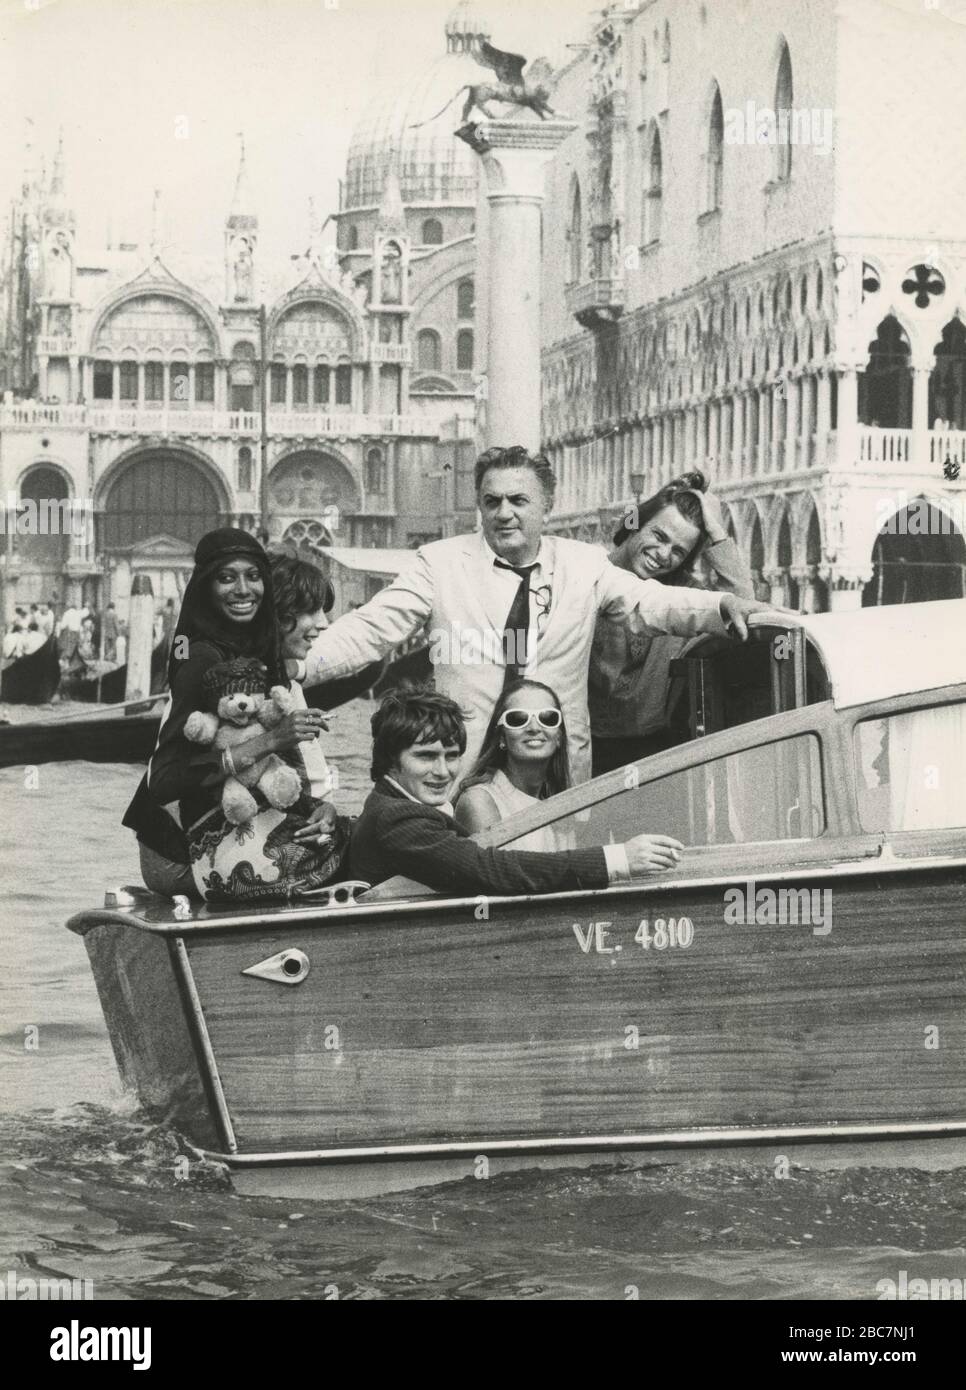 El cineasta italiano Federico Fellini con Giulietta Masina, Capucine, M. Potter y H. Keller en el barco de motor en el Festival de Cine, Venecia, Italia 1969 Foto de stock